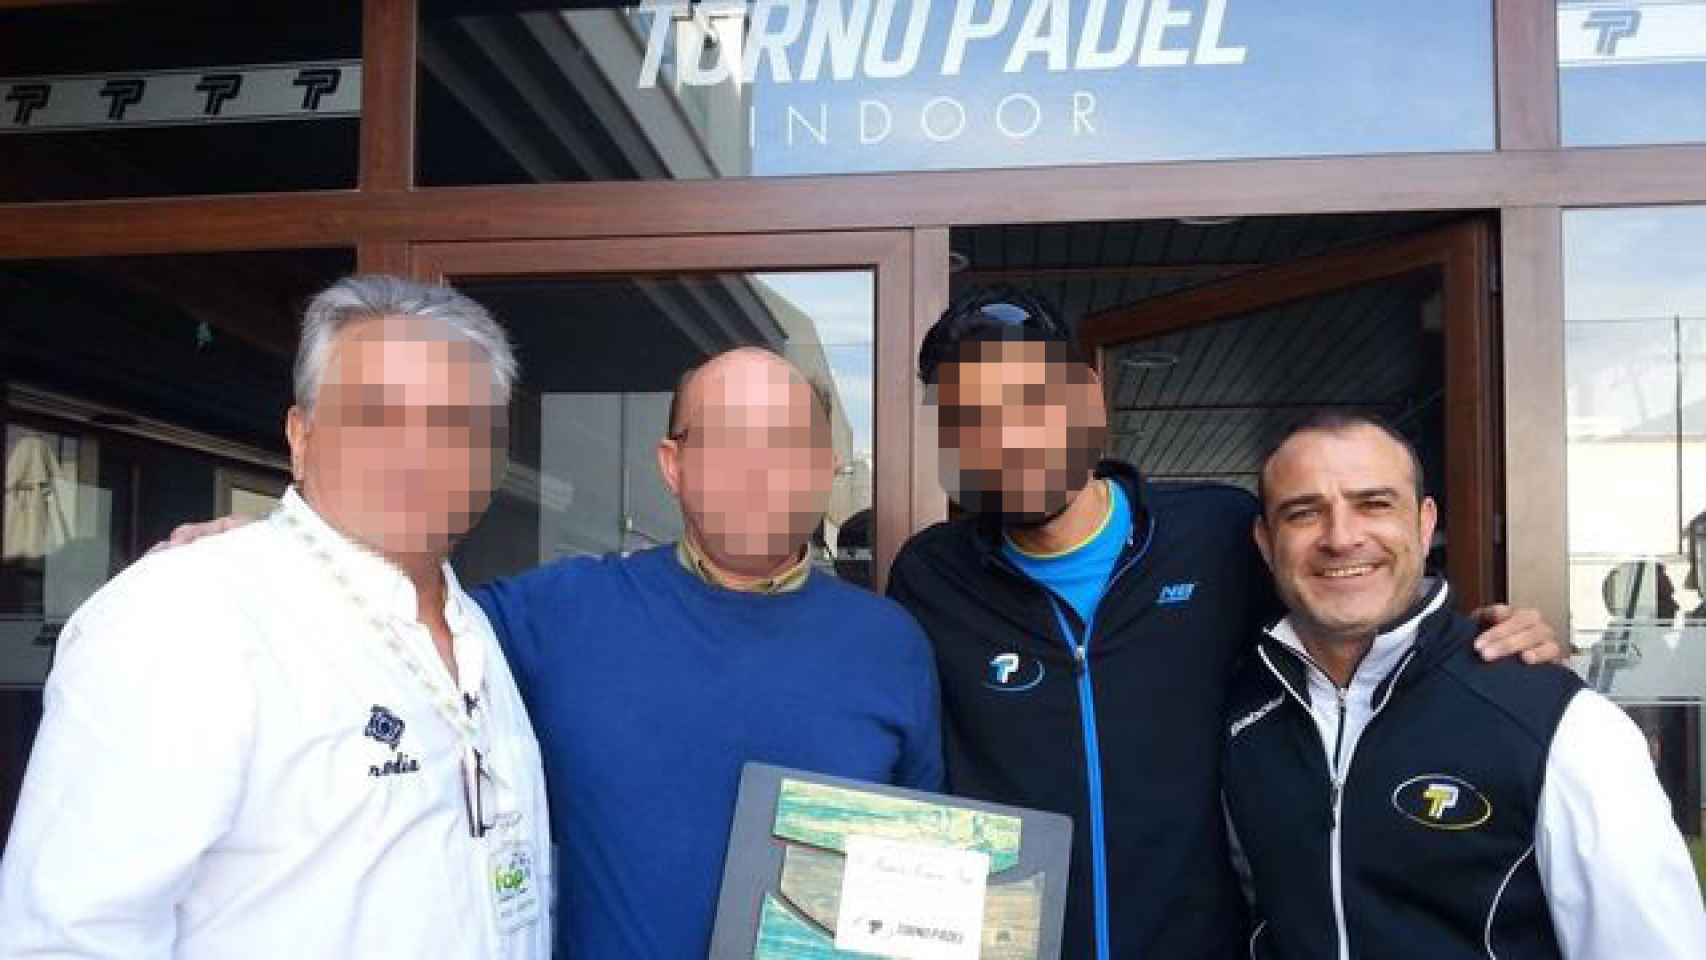 Jacobo Millán García (primero por la derecha) usó su empresa de pádel en Chiclana de la Frontera (Cádiz) para lavar el dinero procedente del narcotráfico. Así lo piensan los investigadores policiales.